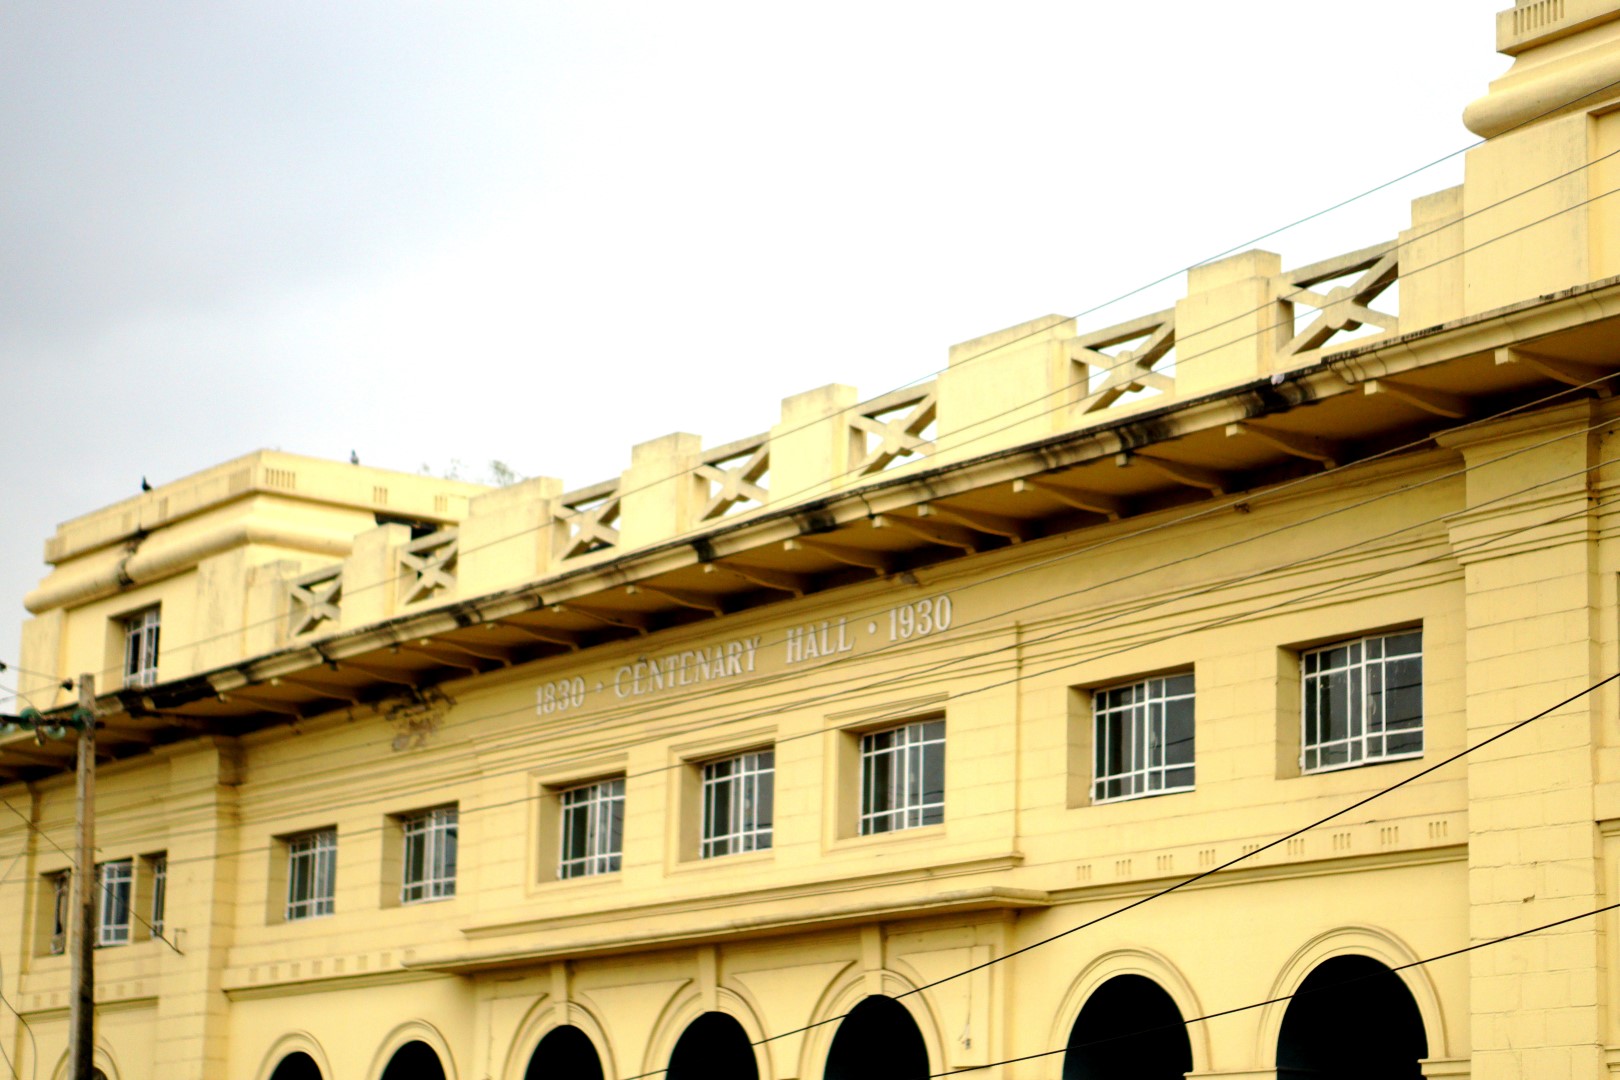 centenary hall in Abeokuta